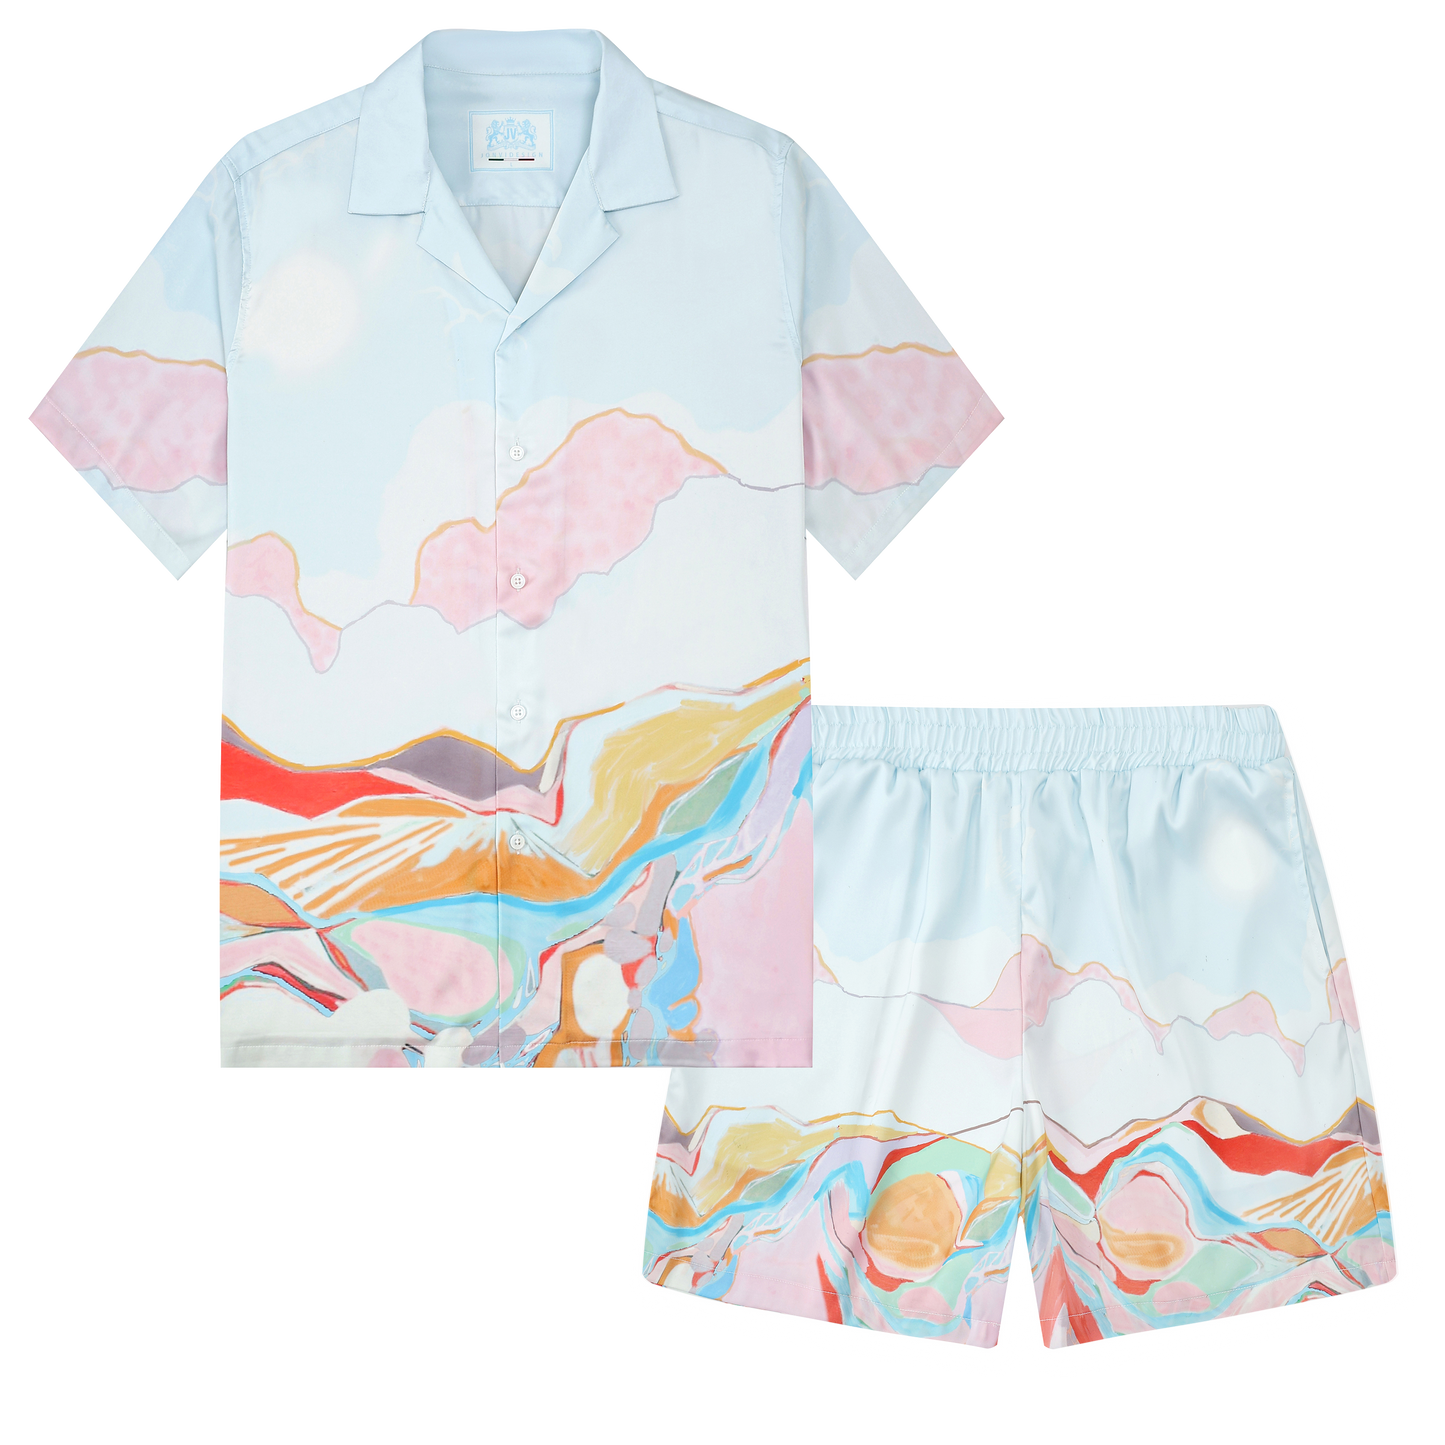 Rolling Mountains Pattern Silk Fiber Waistband Shorts